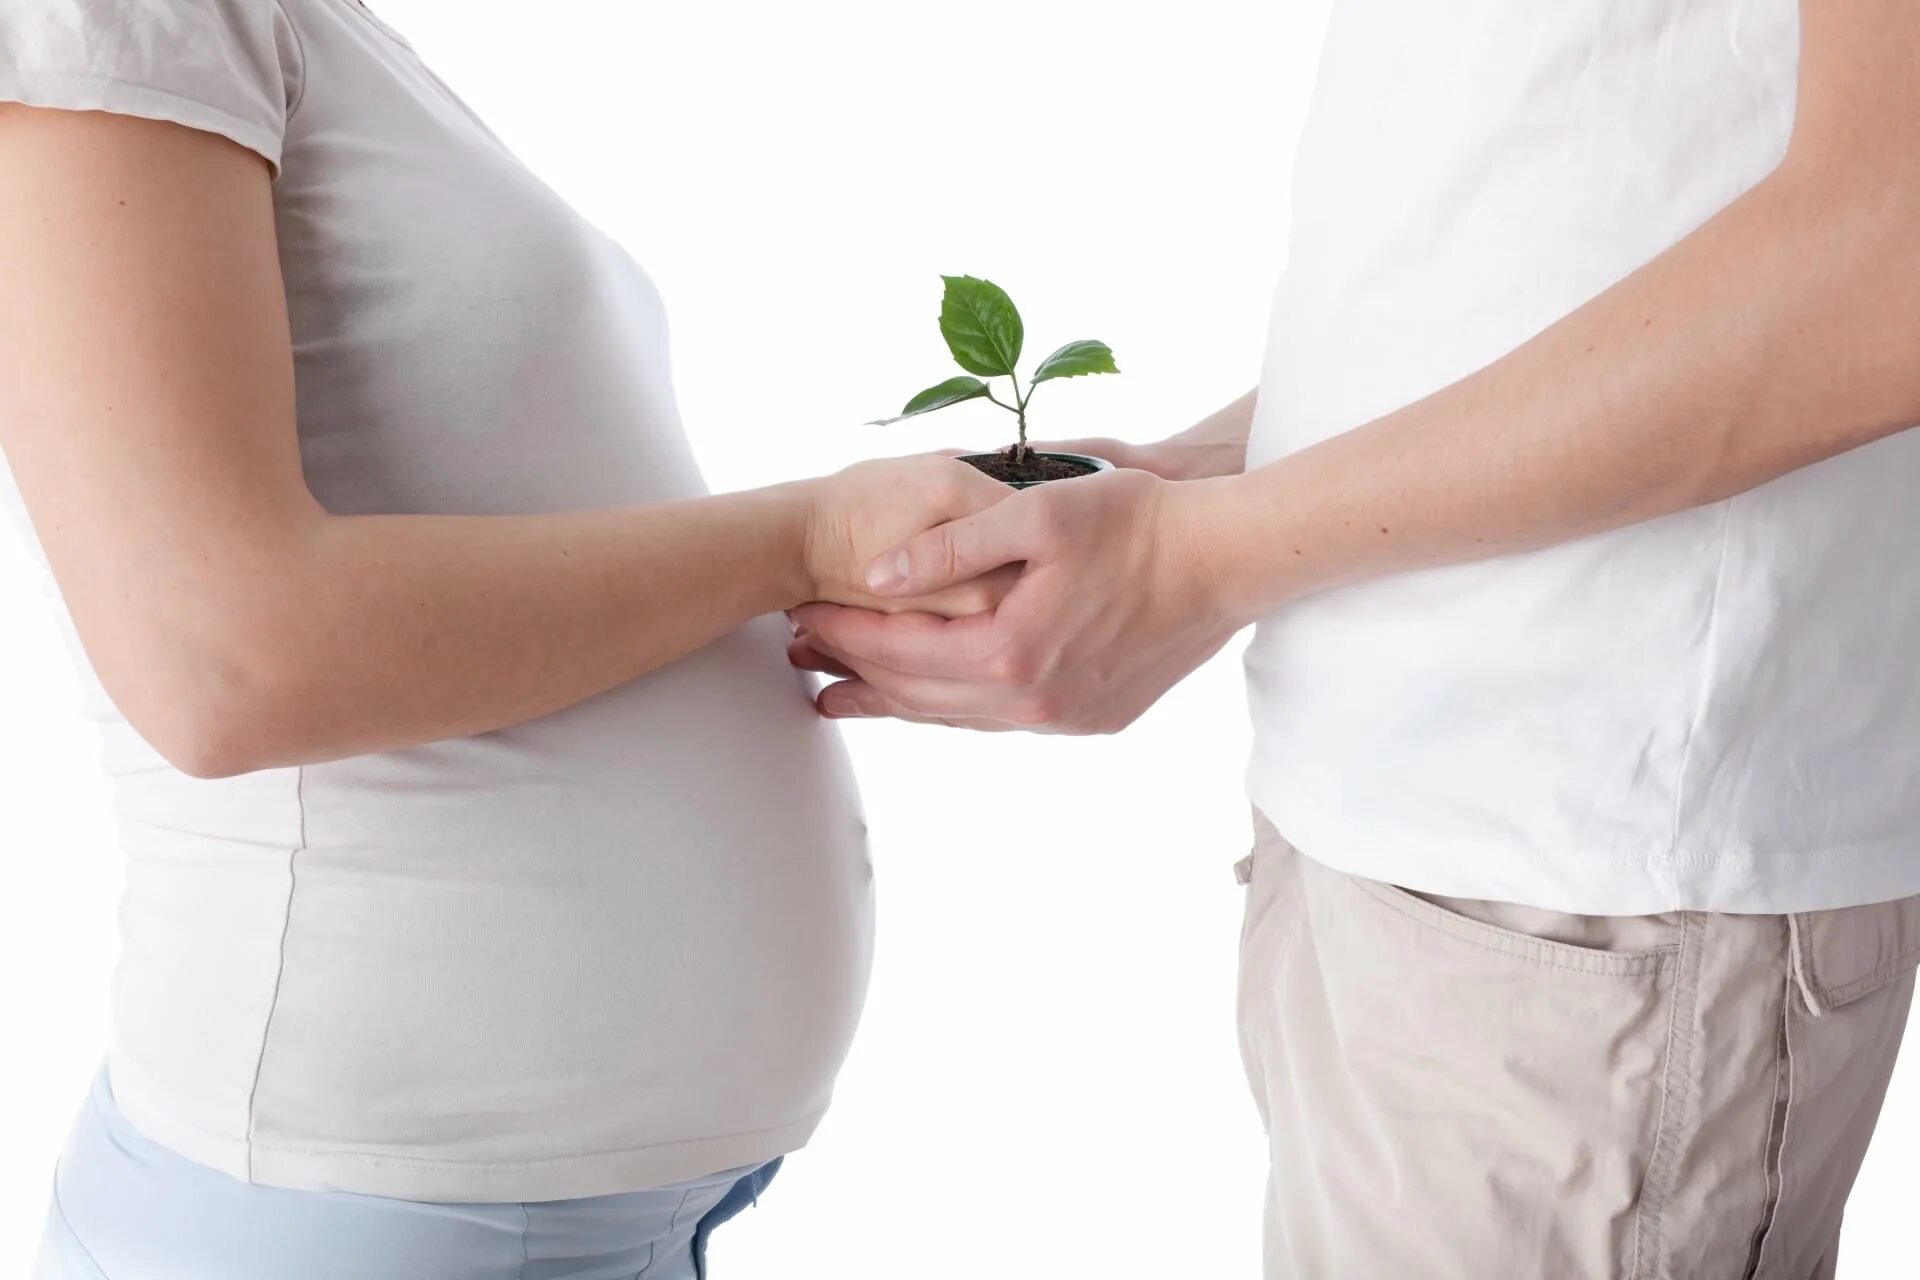 Мужчина перед планированием беременности. Репродуктивное здоровье. Репродуктивное здоровье женщины. Репродуктивное здоровье мужчины и женщины.